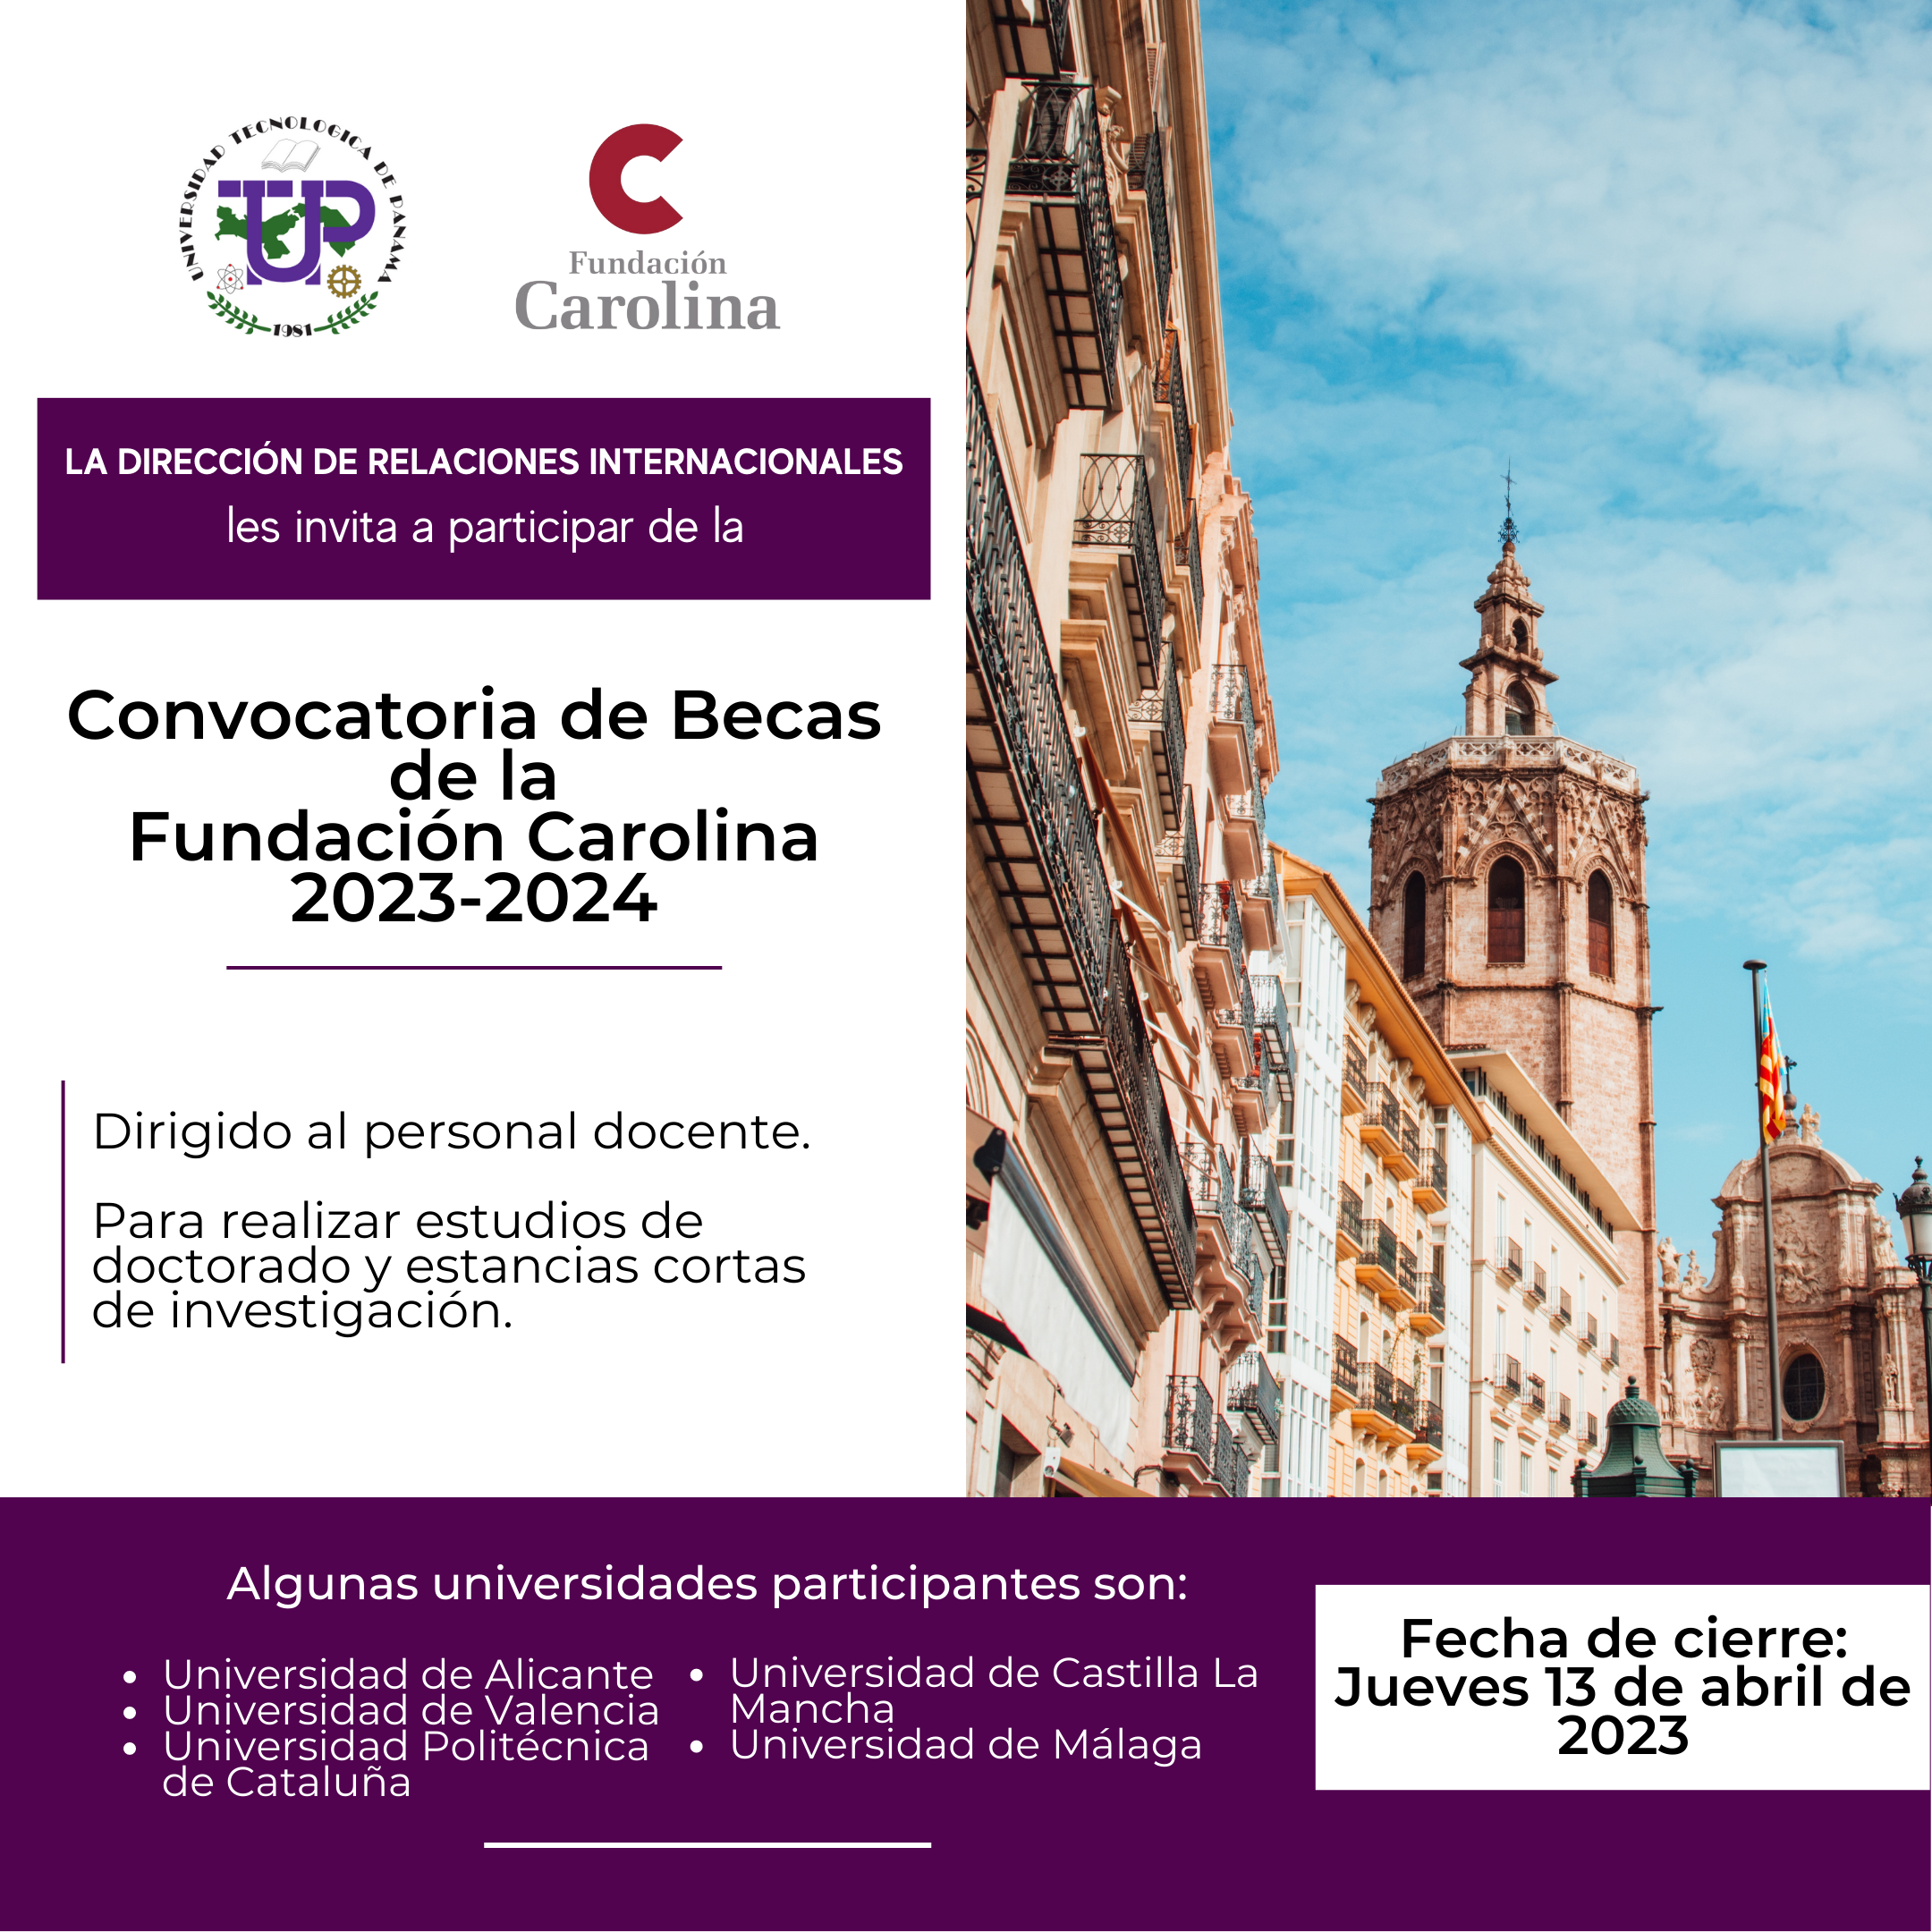 Afiche de promoción para la Convocatoria de Becas de la Fundación Carolina 2023-2024